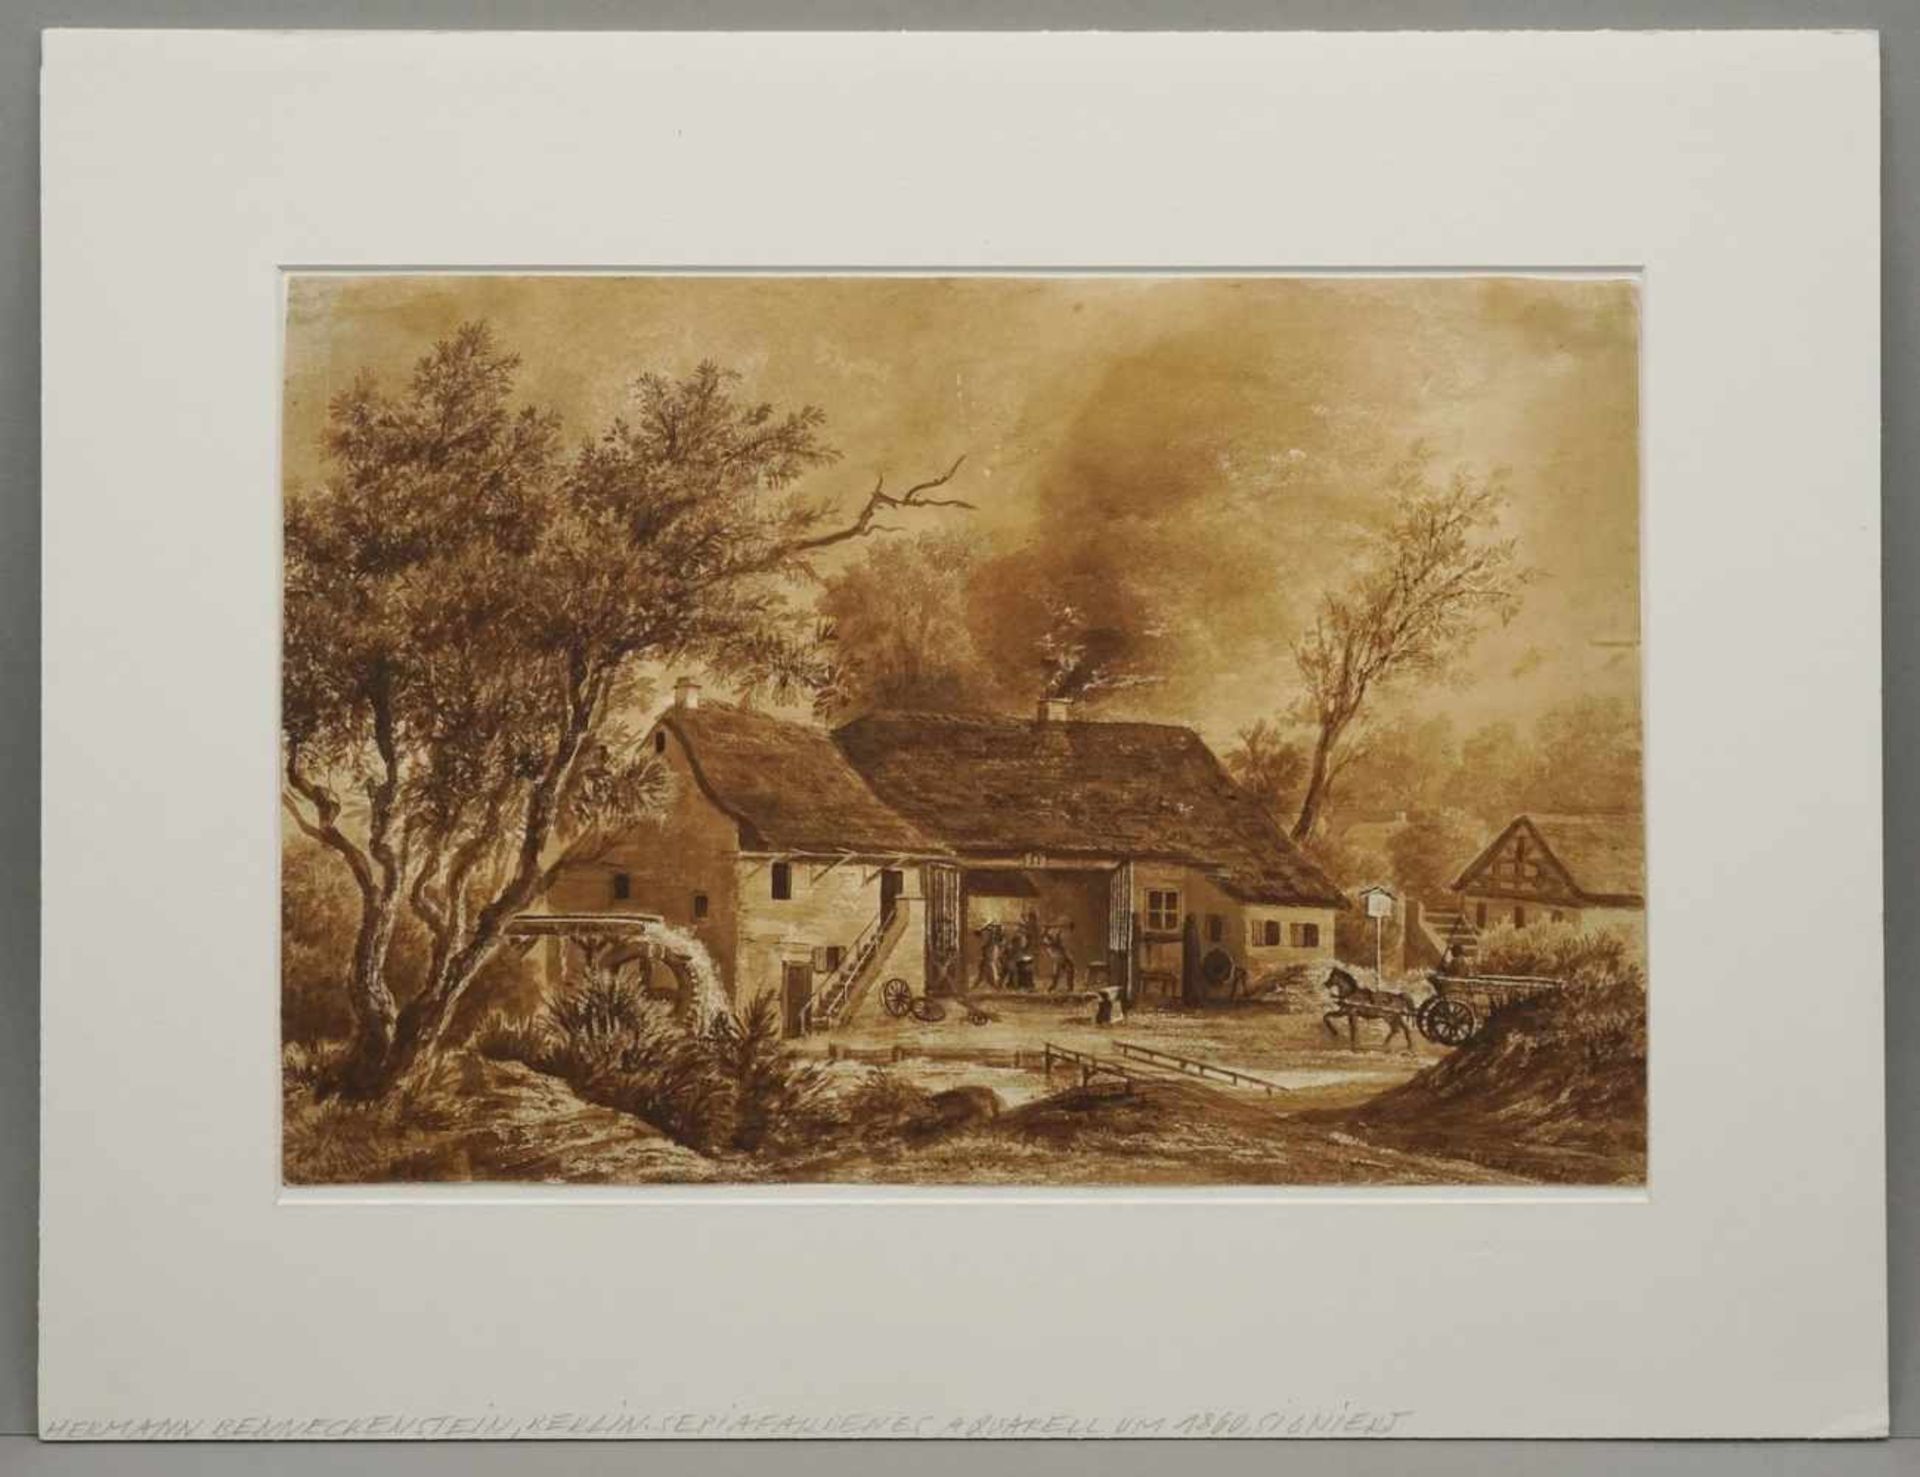 Hermann Benneckenstein, "Schmiede mit Wassermühle"(1830 - 1890), sepiafarbenes Aquarell/Papier, - Bild 2 aus 4